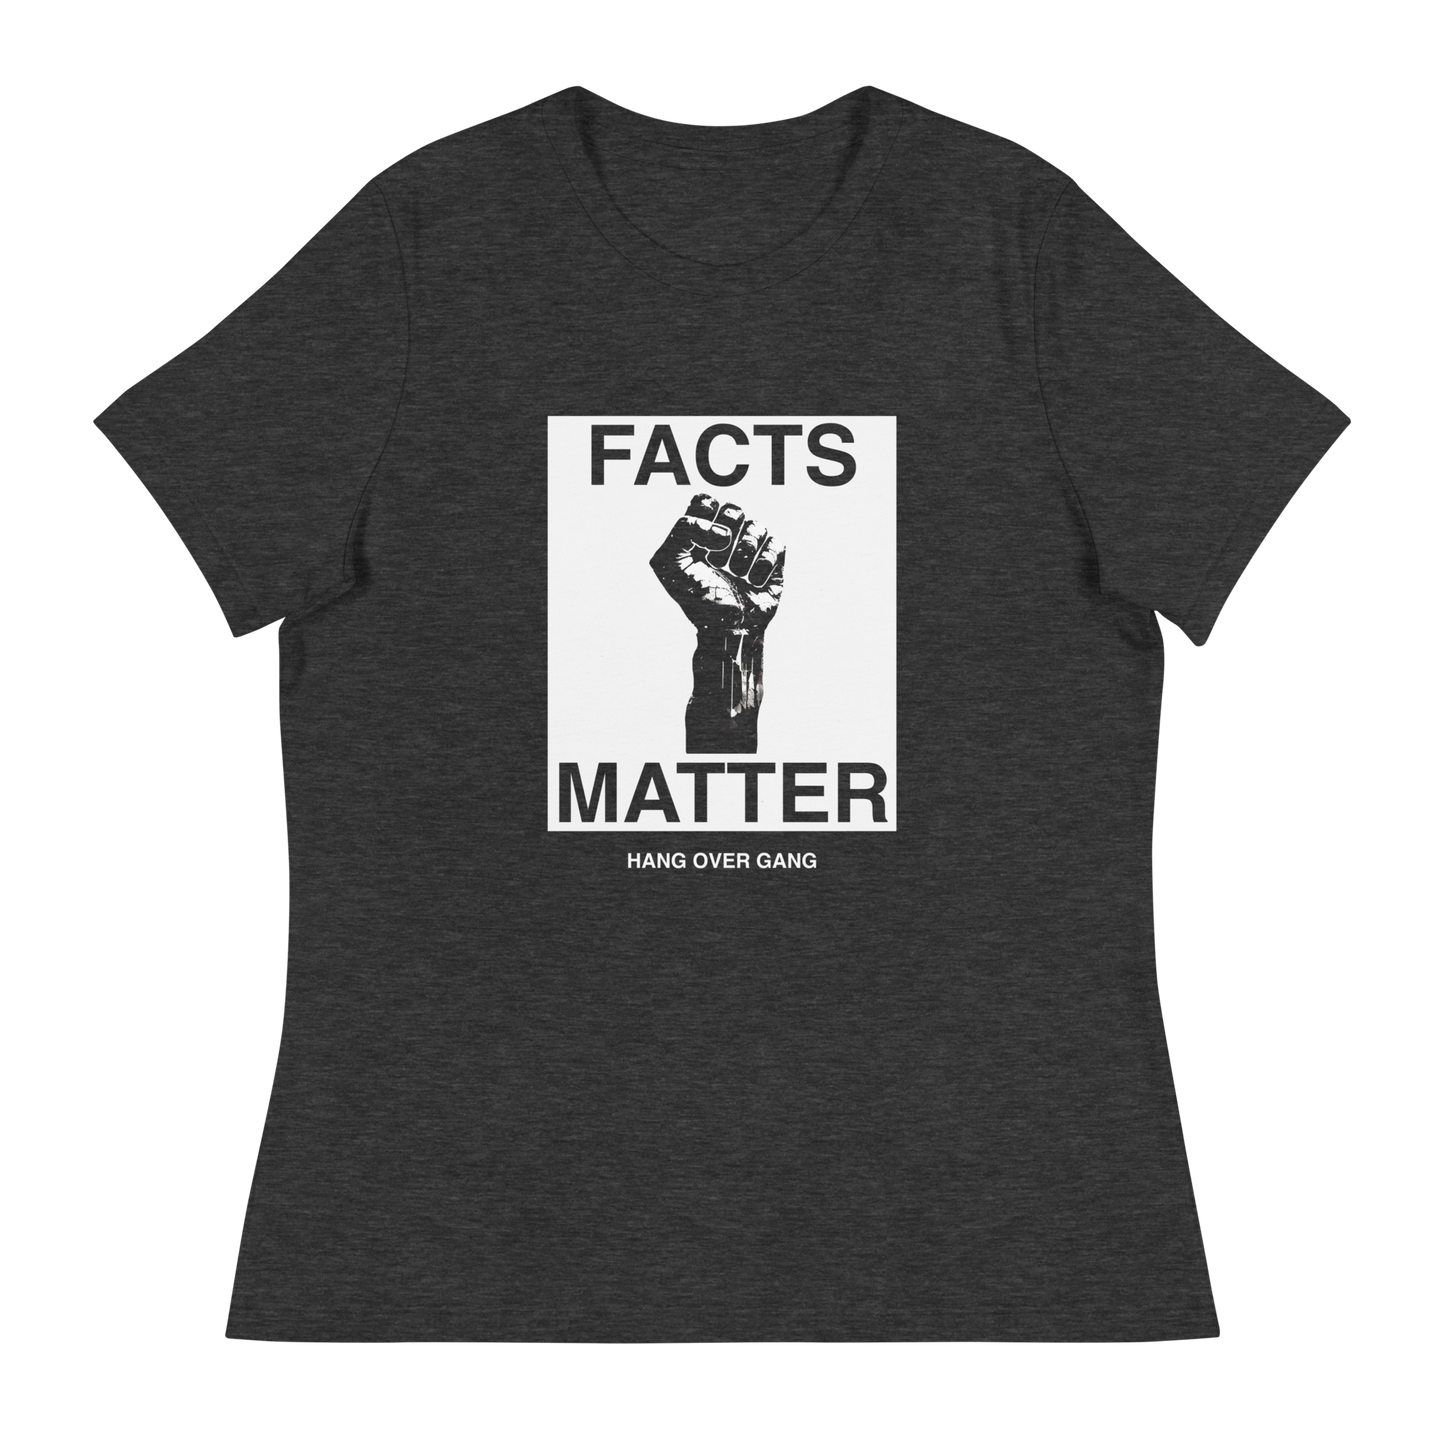 Womens "Facts Matter" T-Shirt